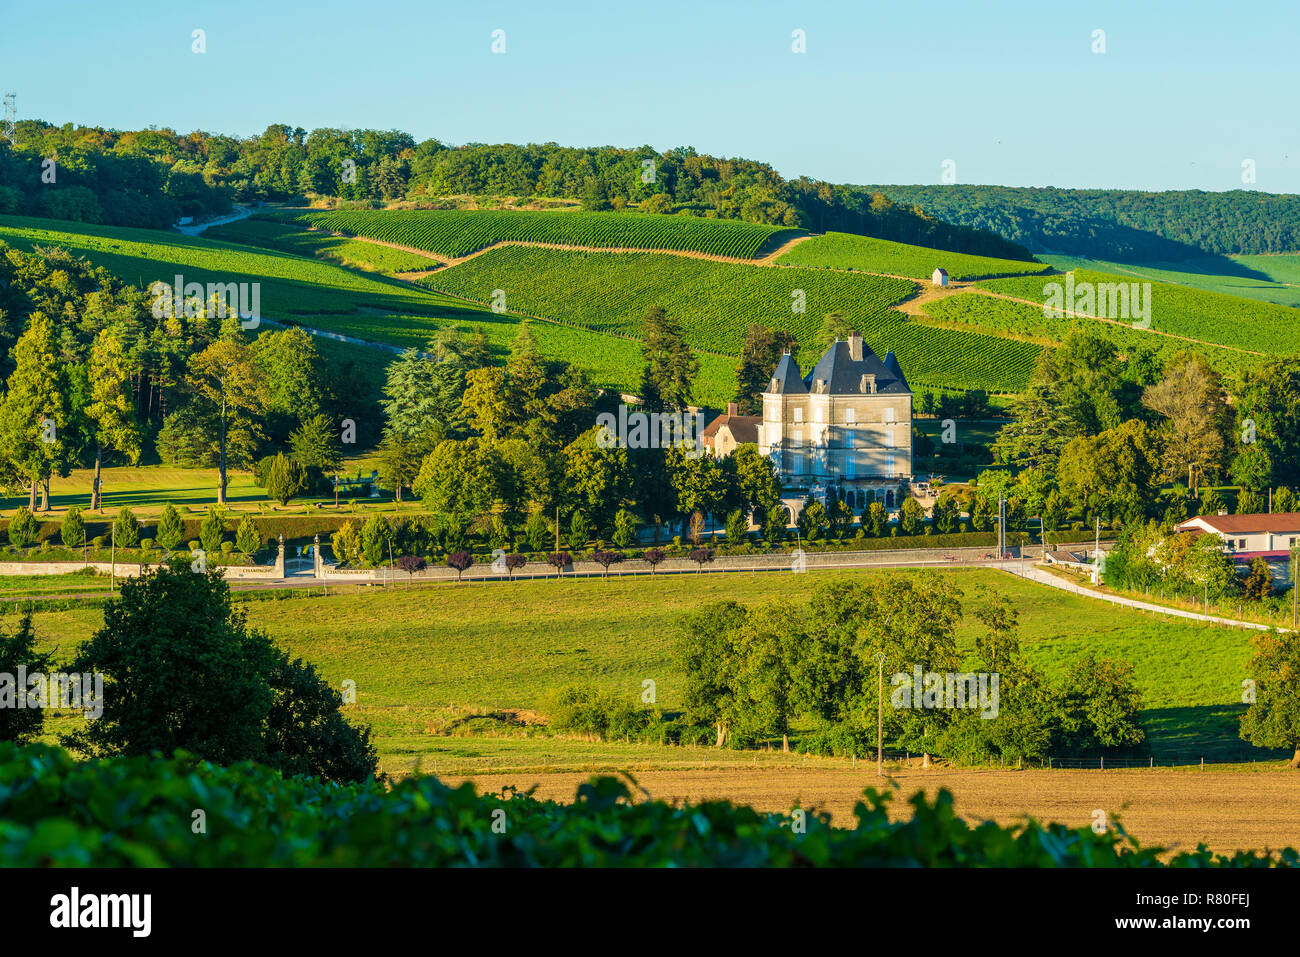 Bligny (nord-est de la France). Paysage rural entourant le château construit par Dampierre, au milieu de la région viticole "Côte des Bar" (être Banque D'Images